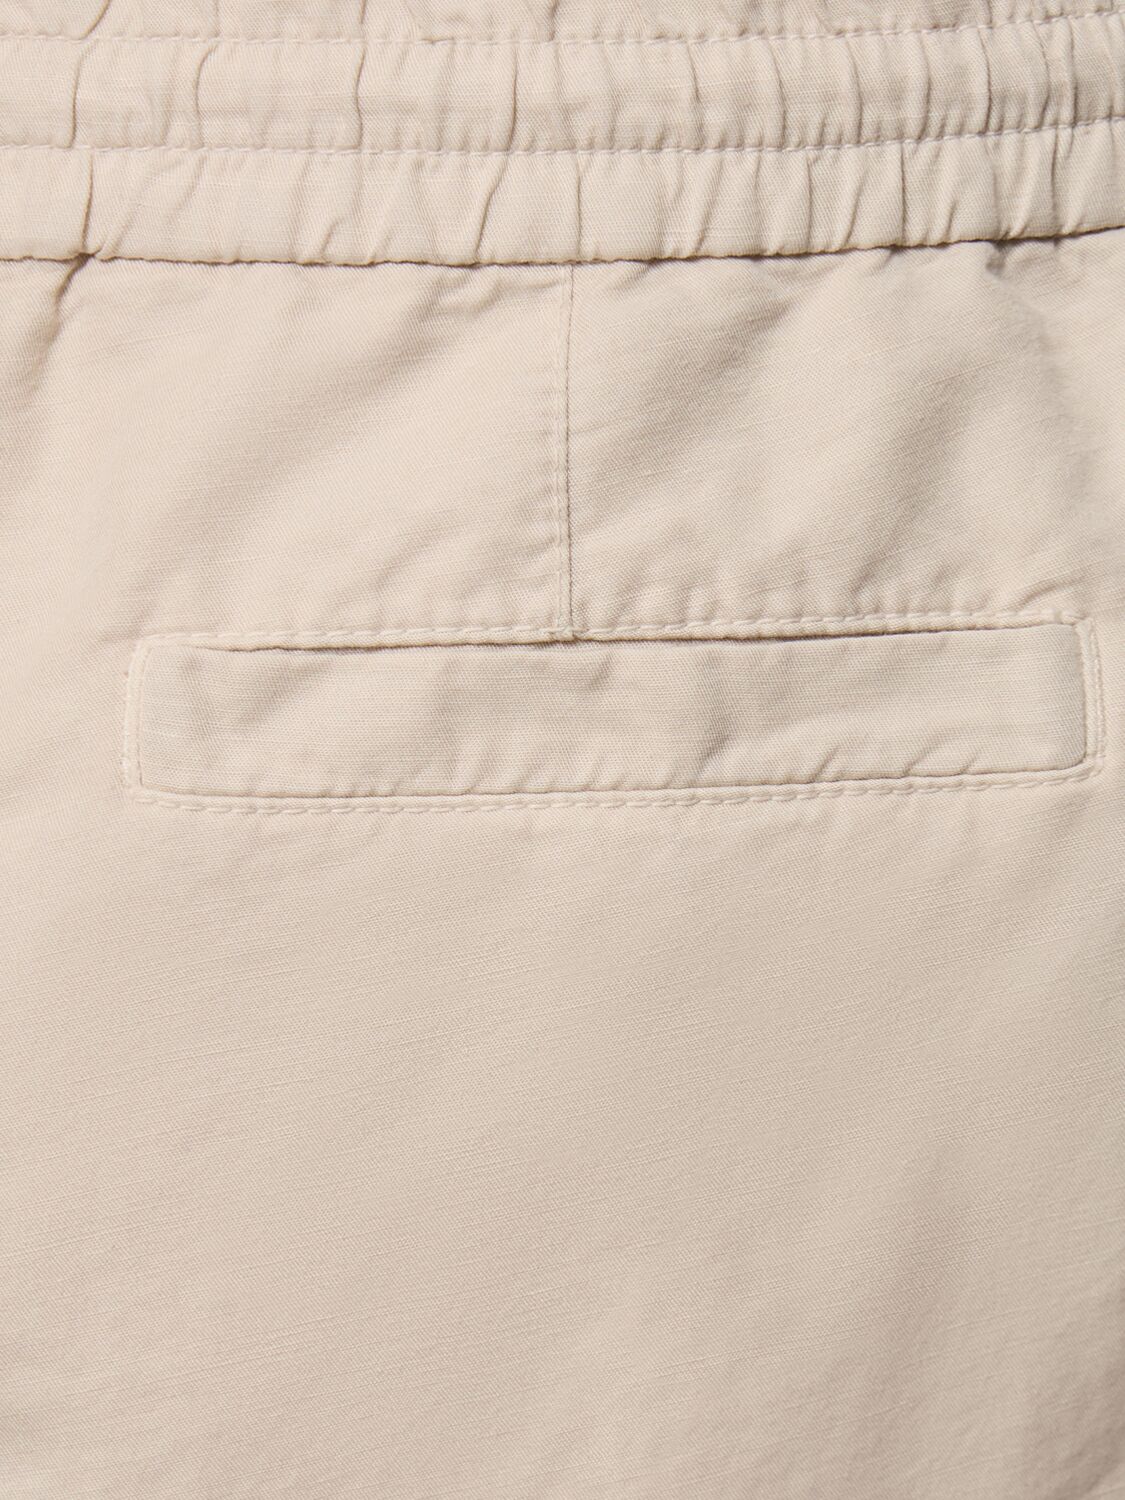 Shop Brunello Cucinelli Cotton & Linen Bermuda Shorts In Light Beige